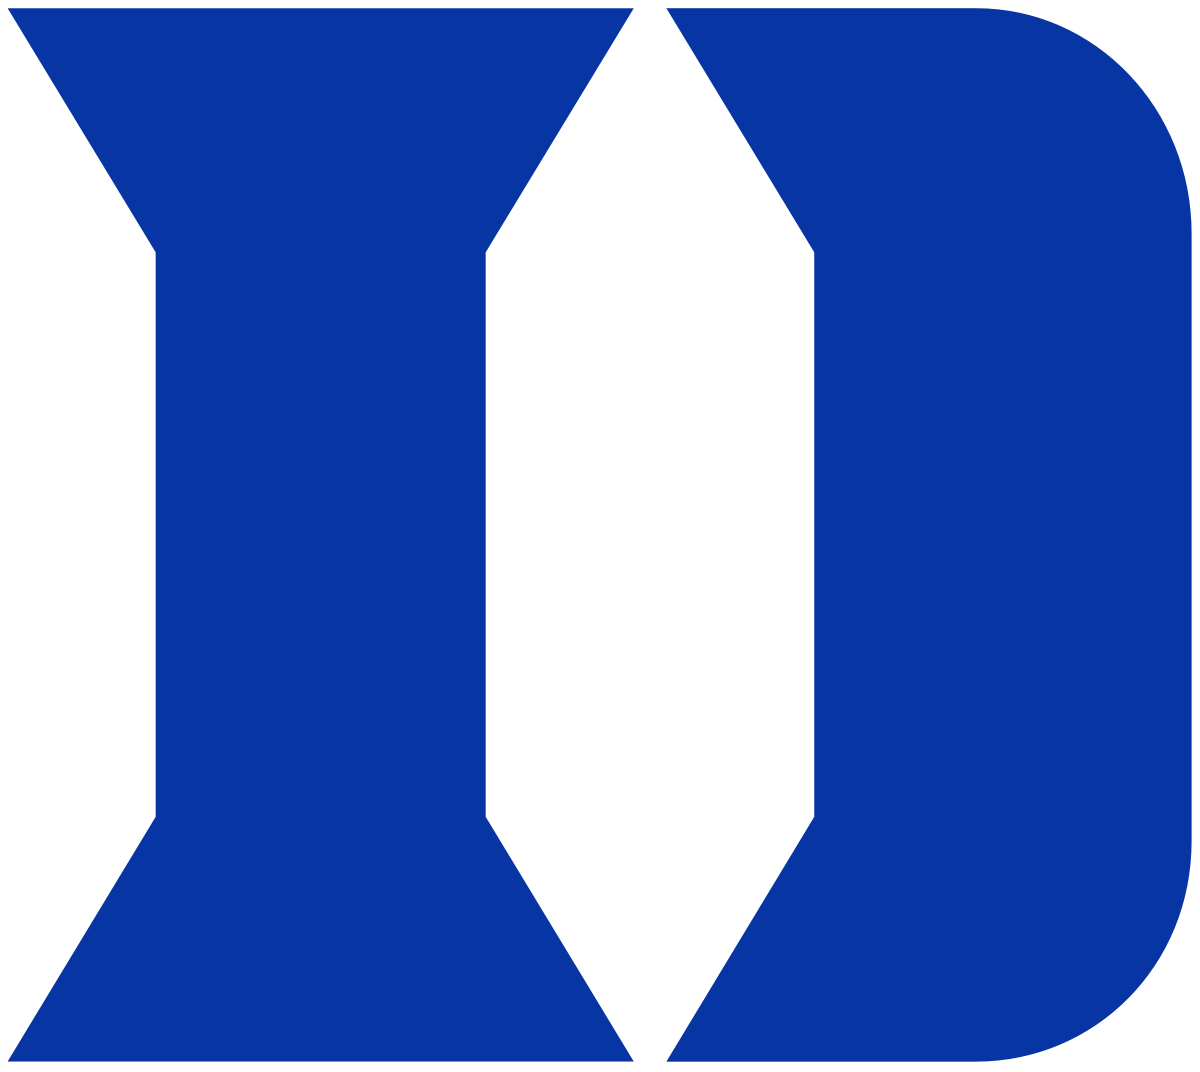 Duke University Blue Devils Logo - Duke Blue Devils